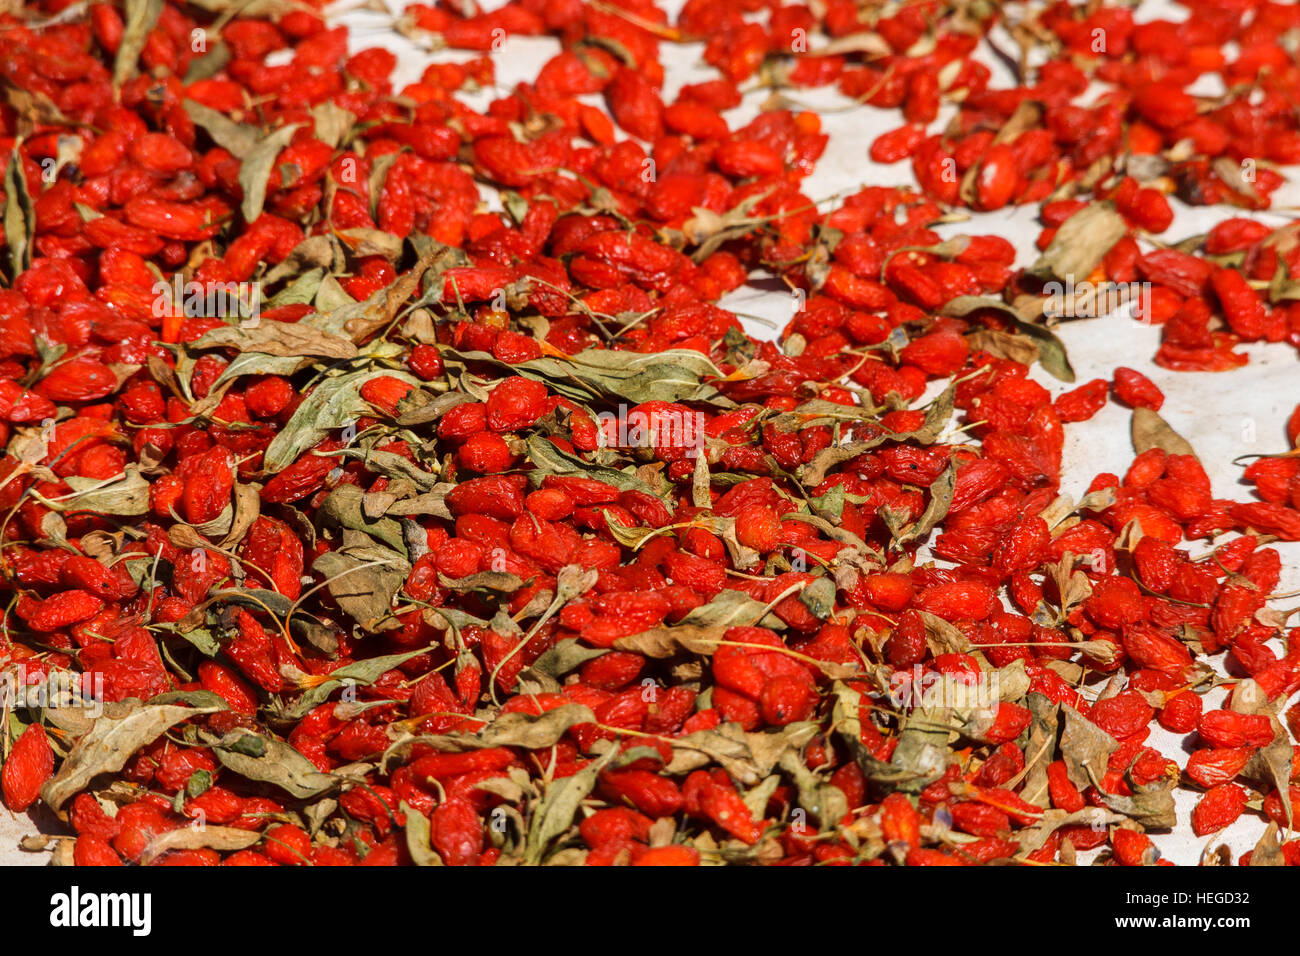 Goji berries drying in the sun, Xinjiang province, China Stock Photo